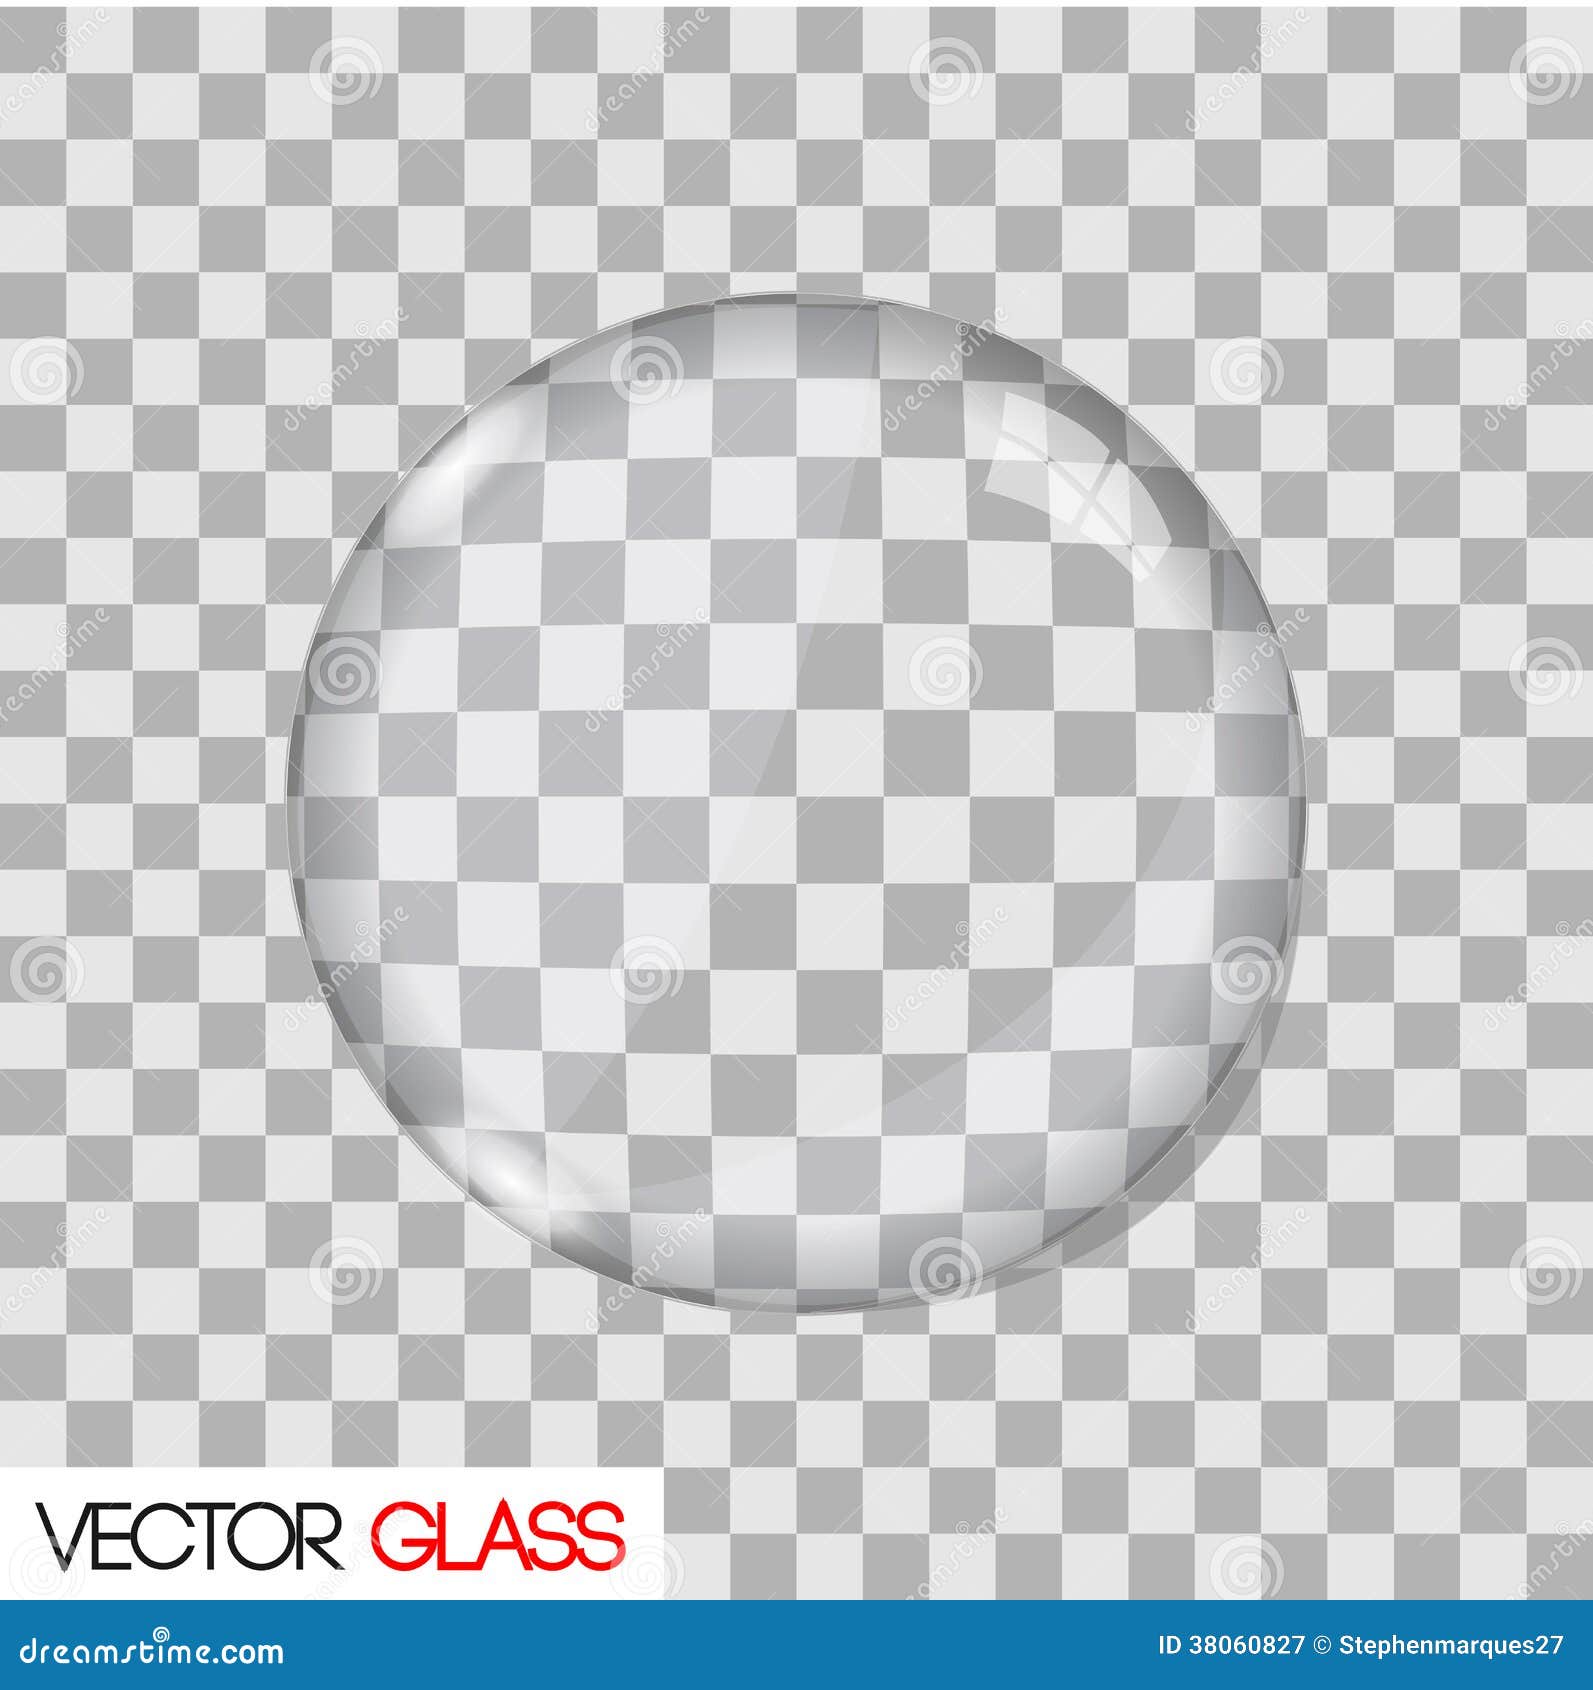 glass lens  